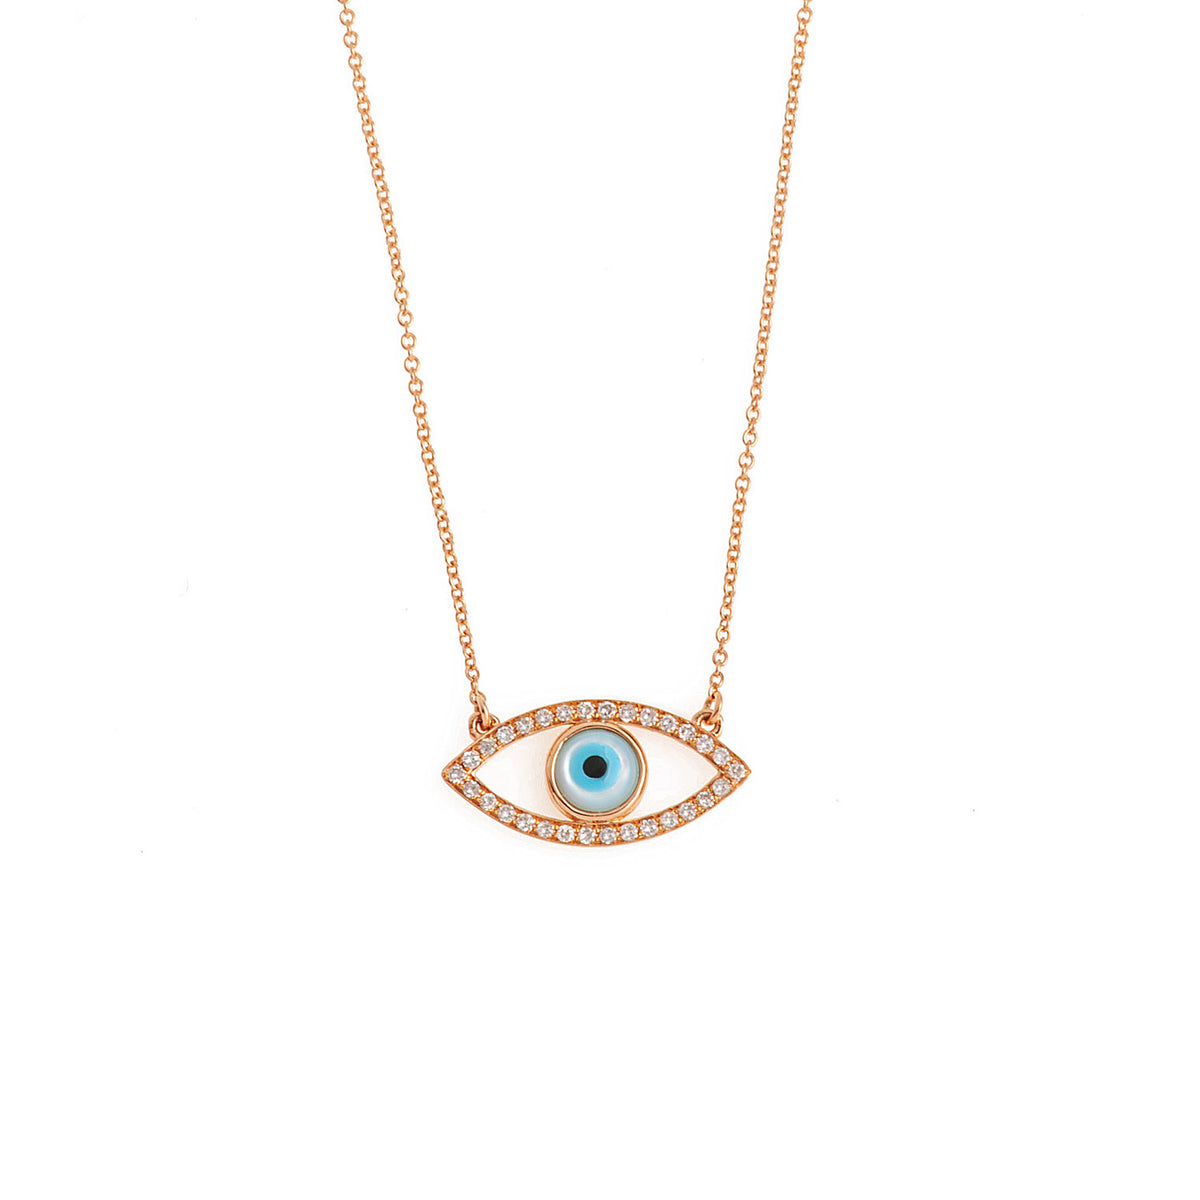 Evil eye necklace. Diamond evil eye necklace. Μάτι κολιέ.